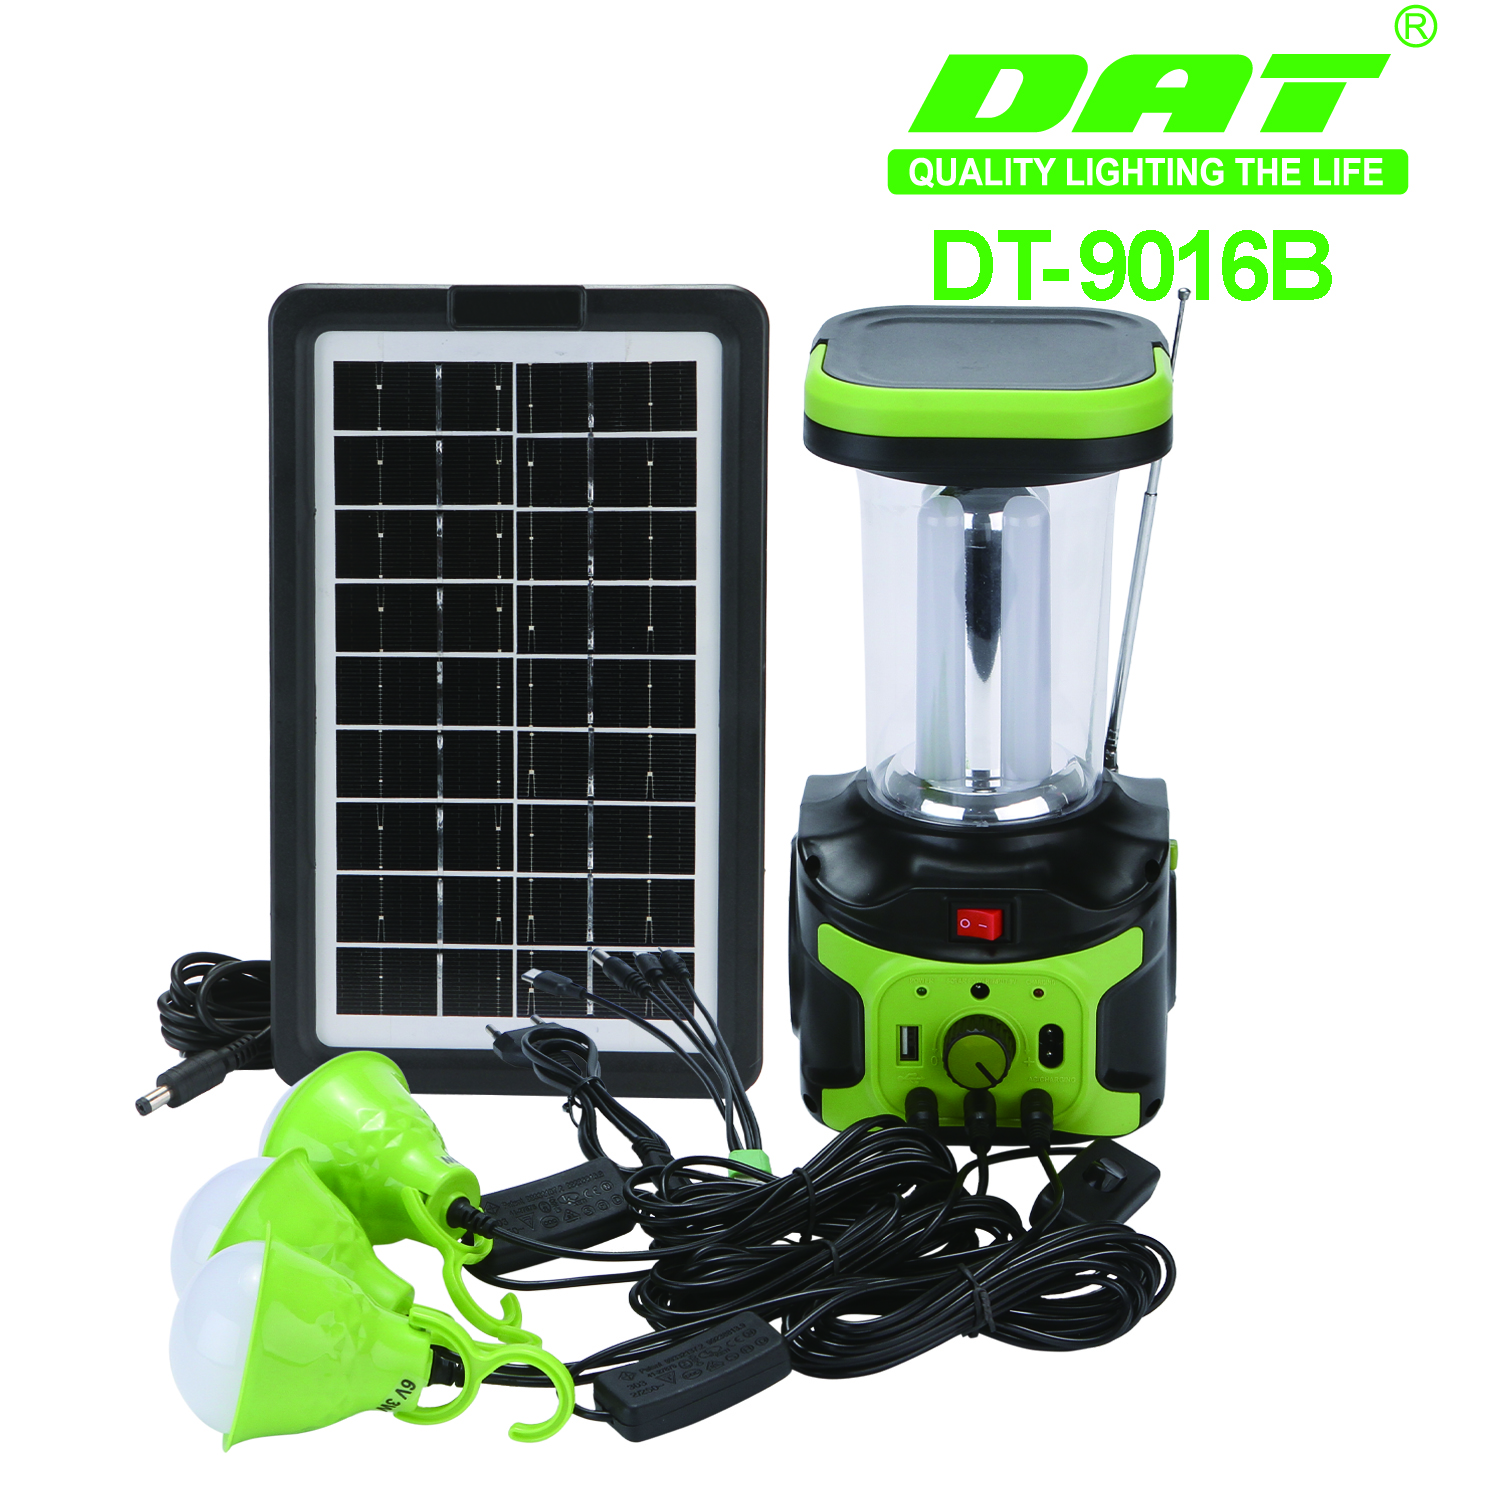 DT-9016B户外照明灯带蓝牙MP3收音机功能野营灯太阳能照明小系统可应急充电详情图1